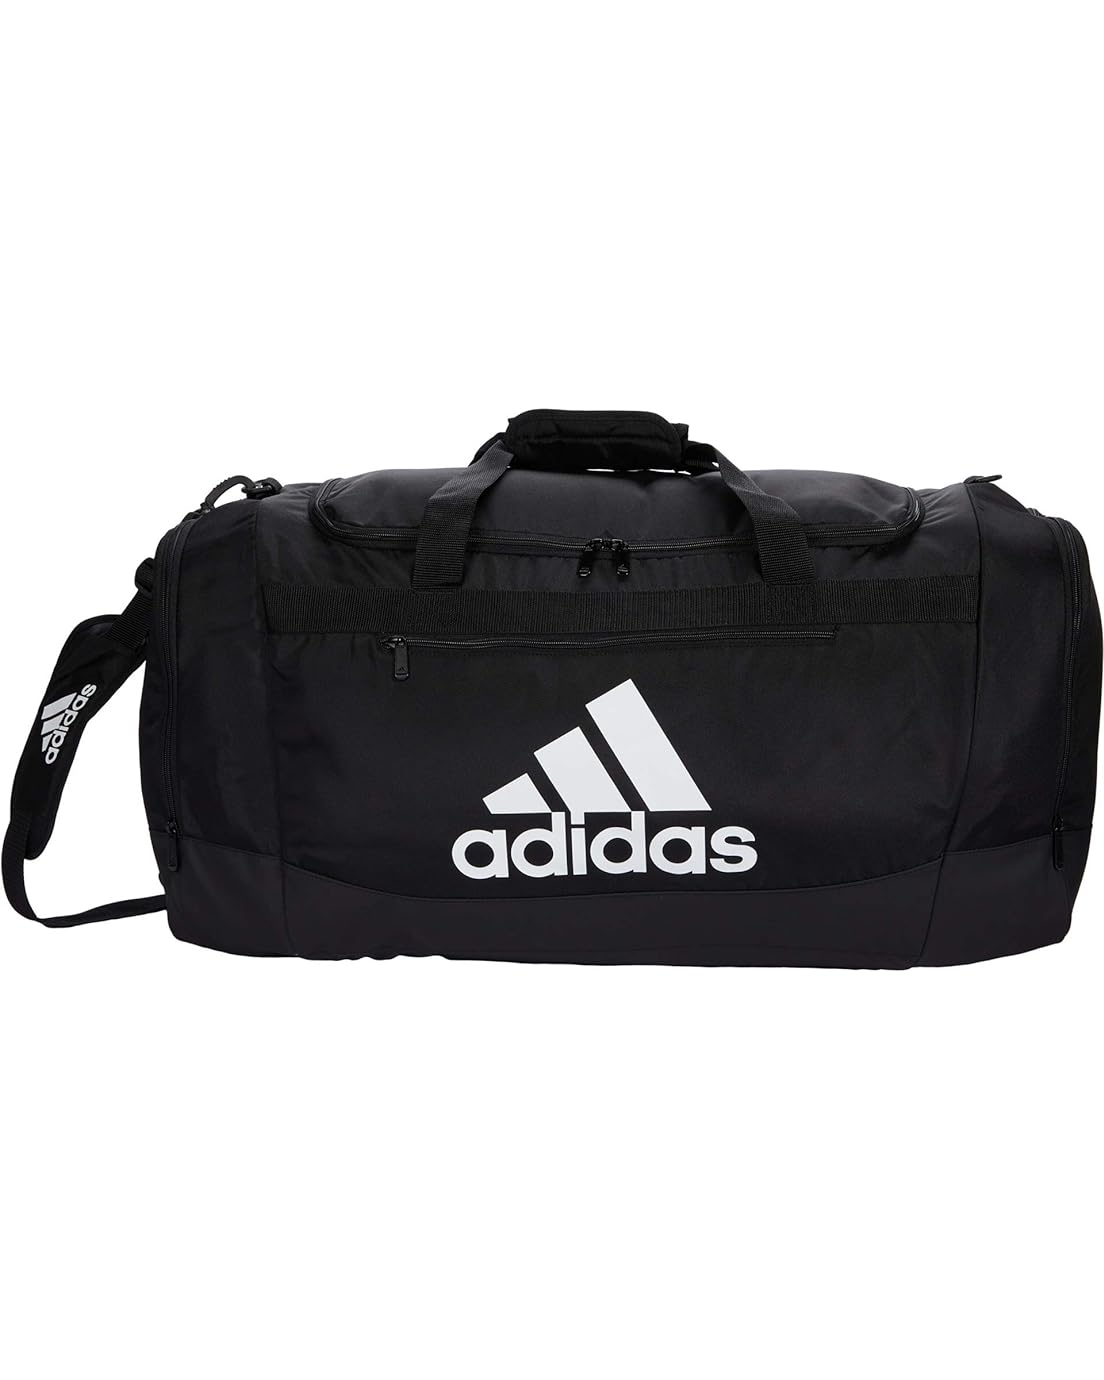 Adidas Defender 4 Large Duffel Bag